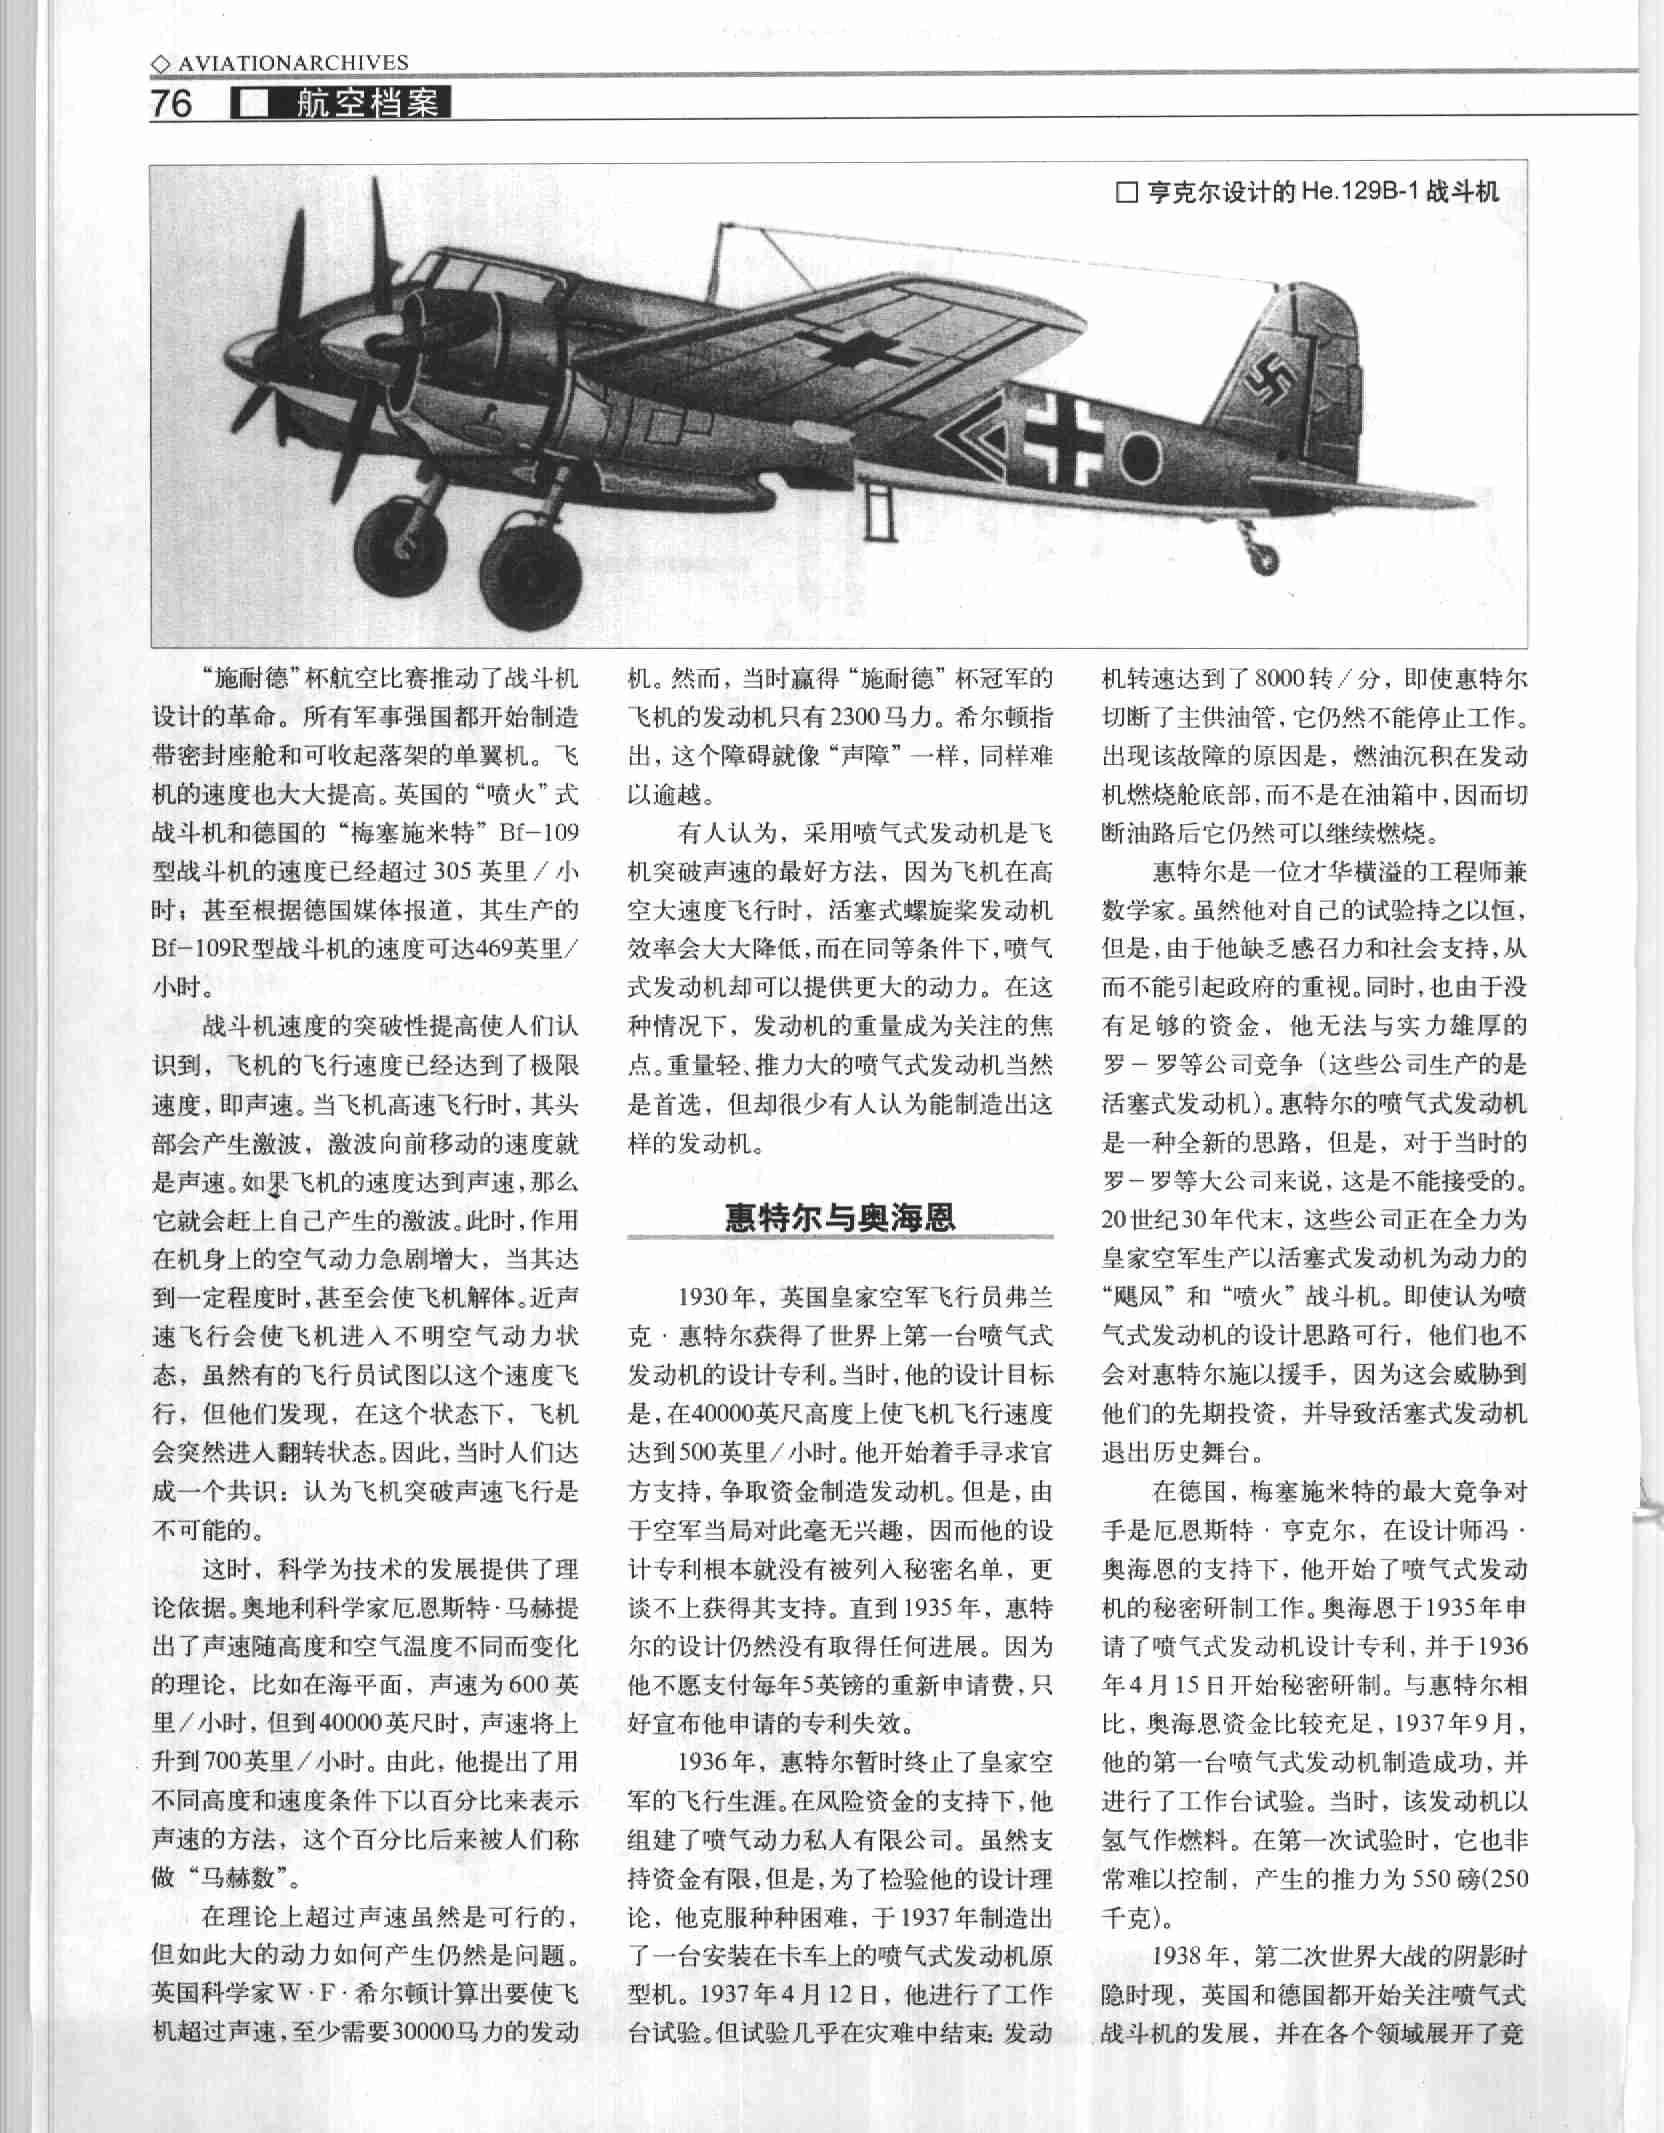 喷气式战斗机史话(1)横空出世——喷气式战斗机的产生